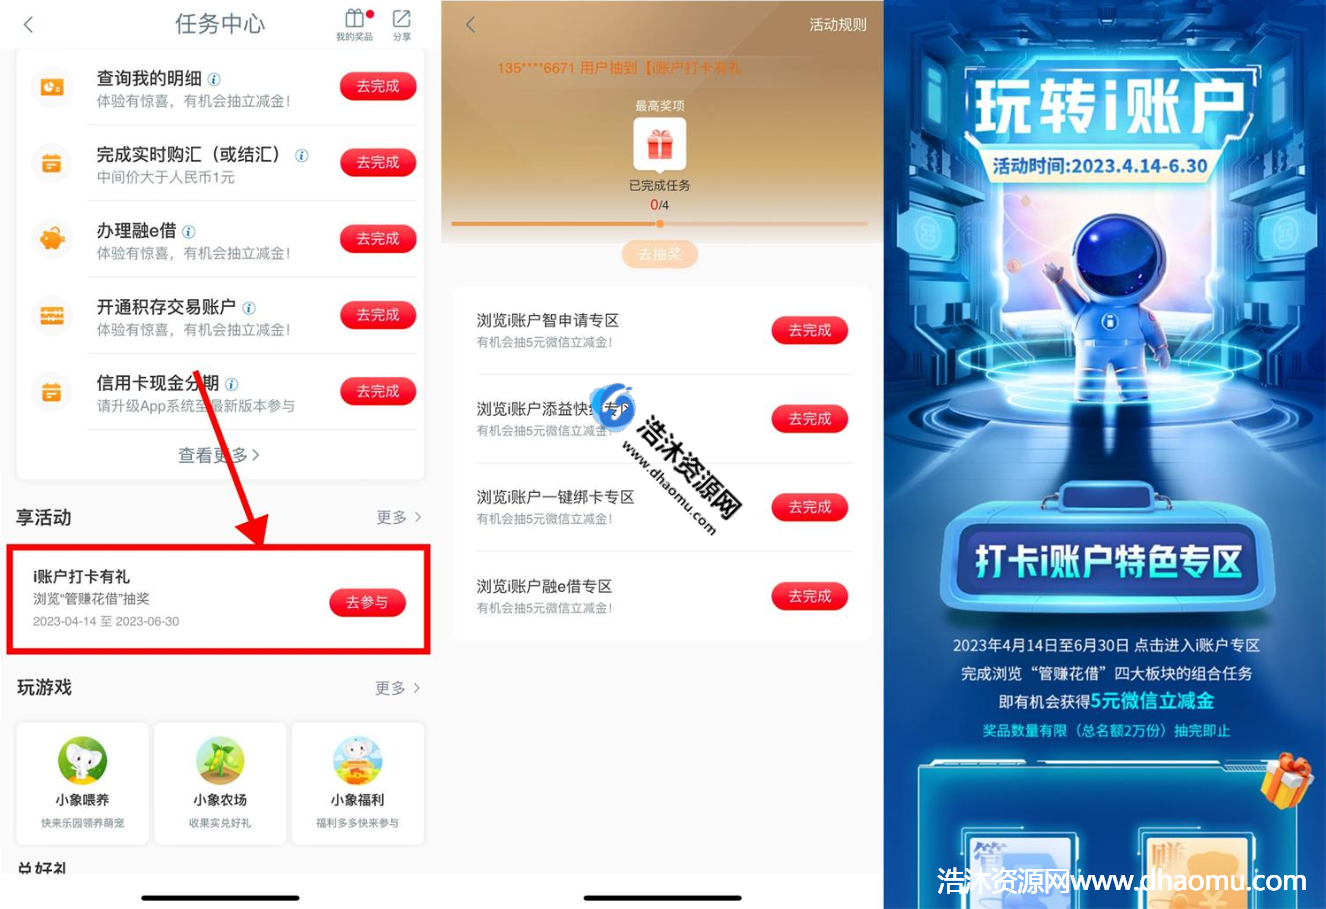 中国工商银行工行i账户打卡有礼免费抽取5元微信立减金